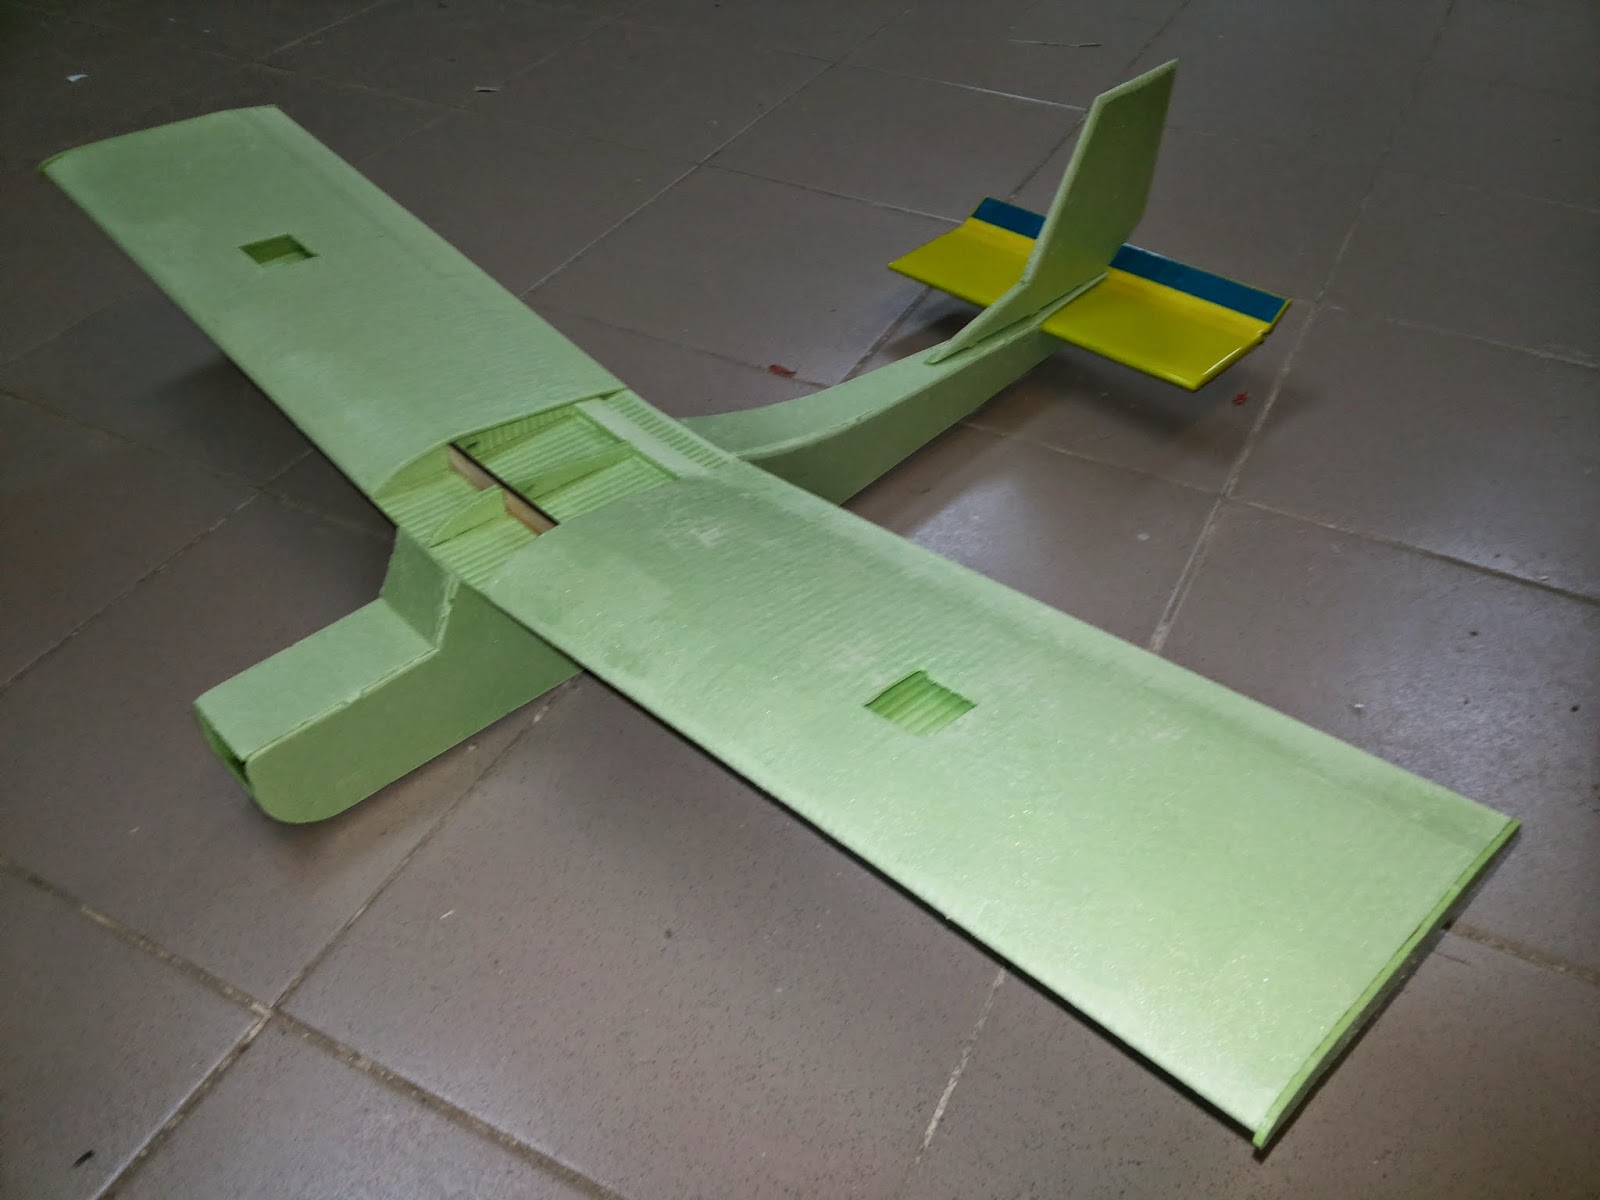 Радиоуправляемая модель самолета "Cessna из потолочки"